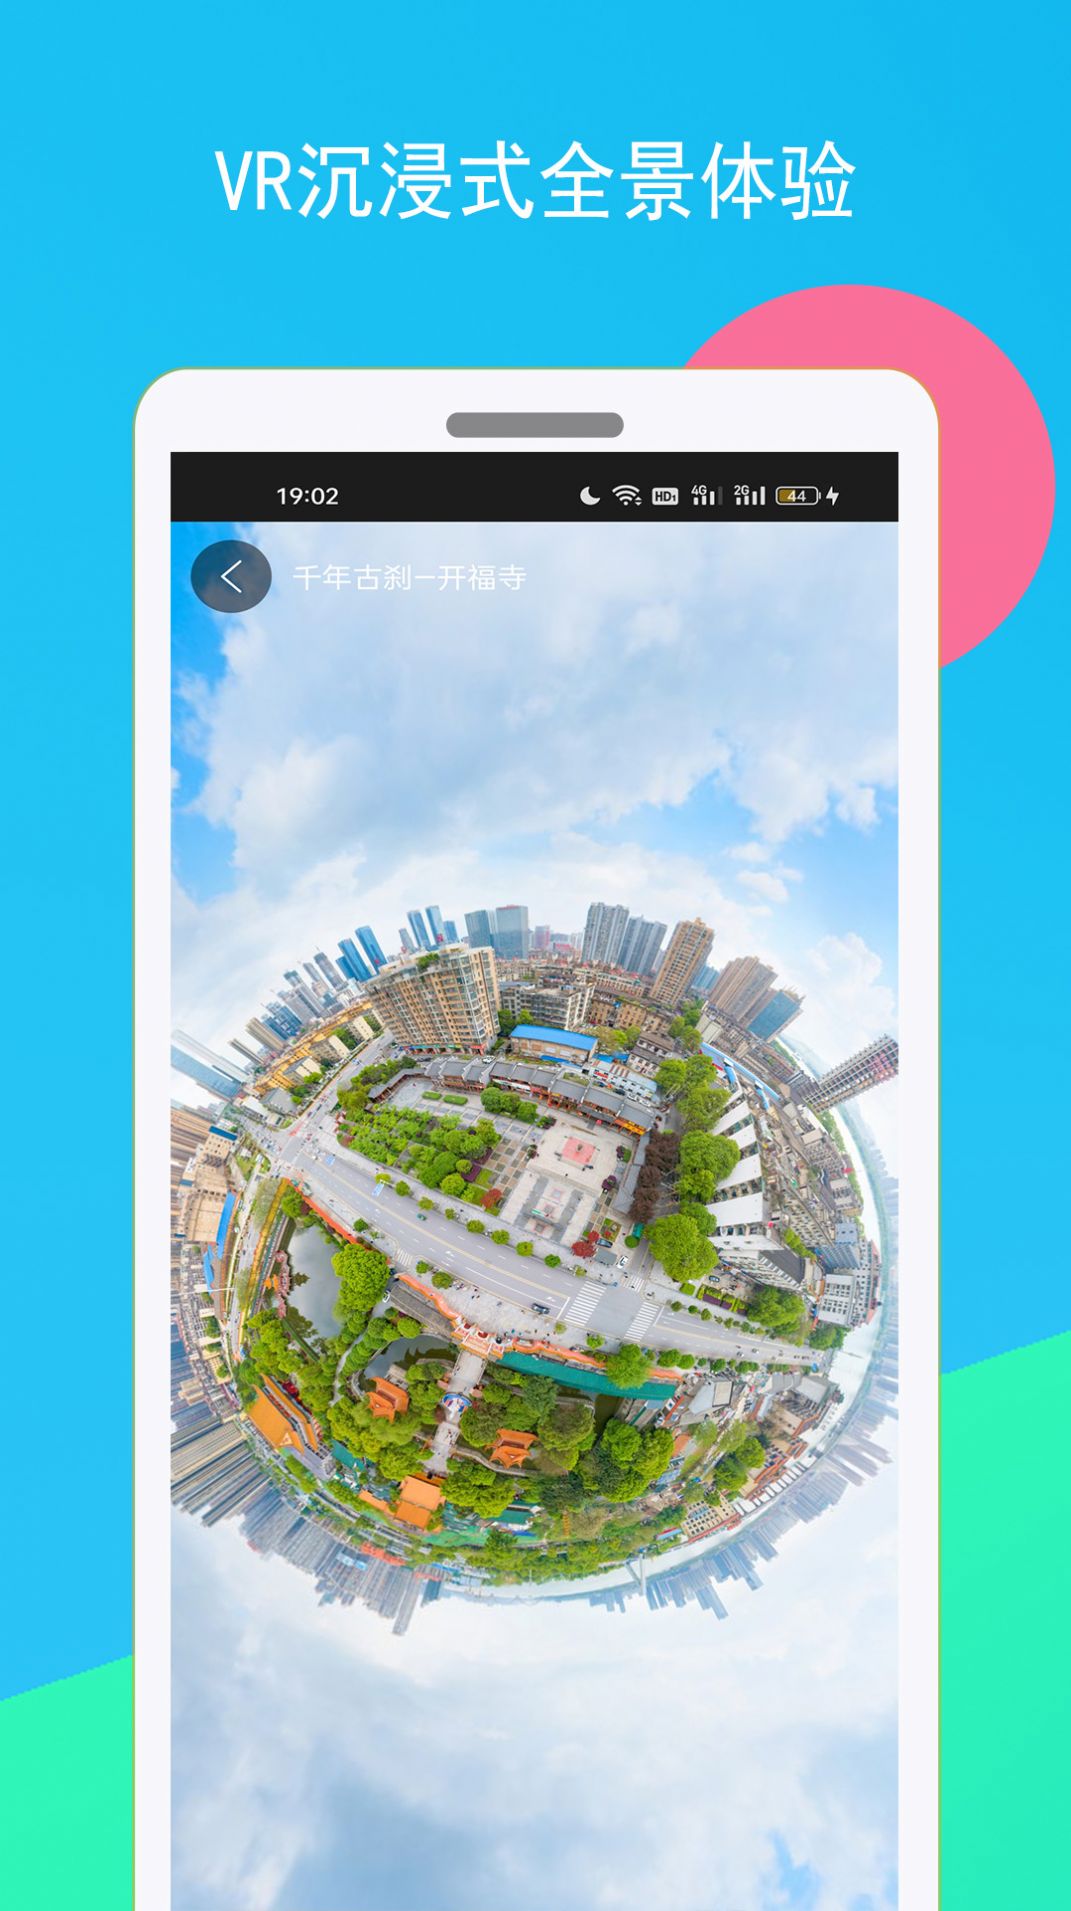 手机高清世界街景地图app免费下载安装v23.03.21截图